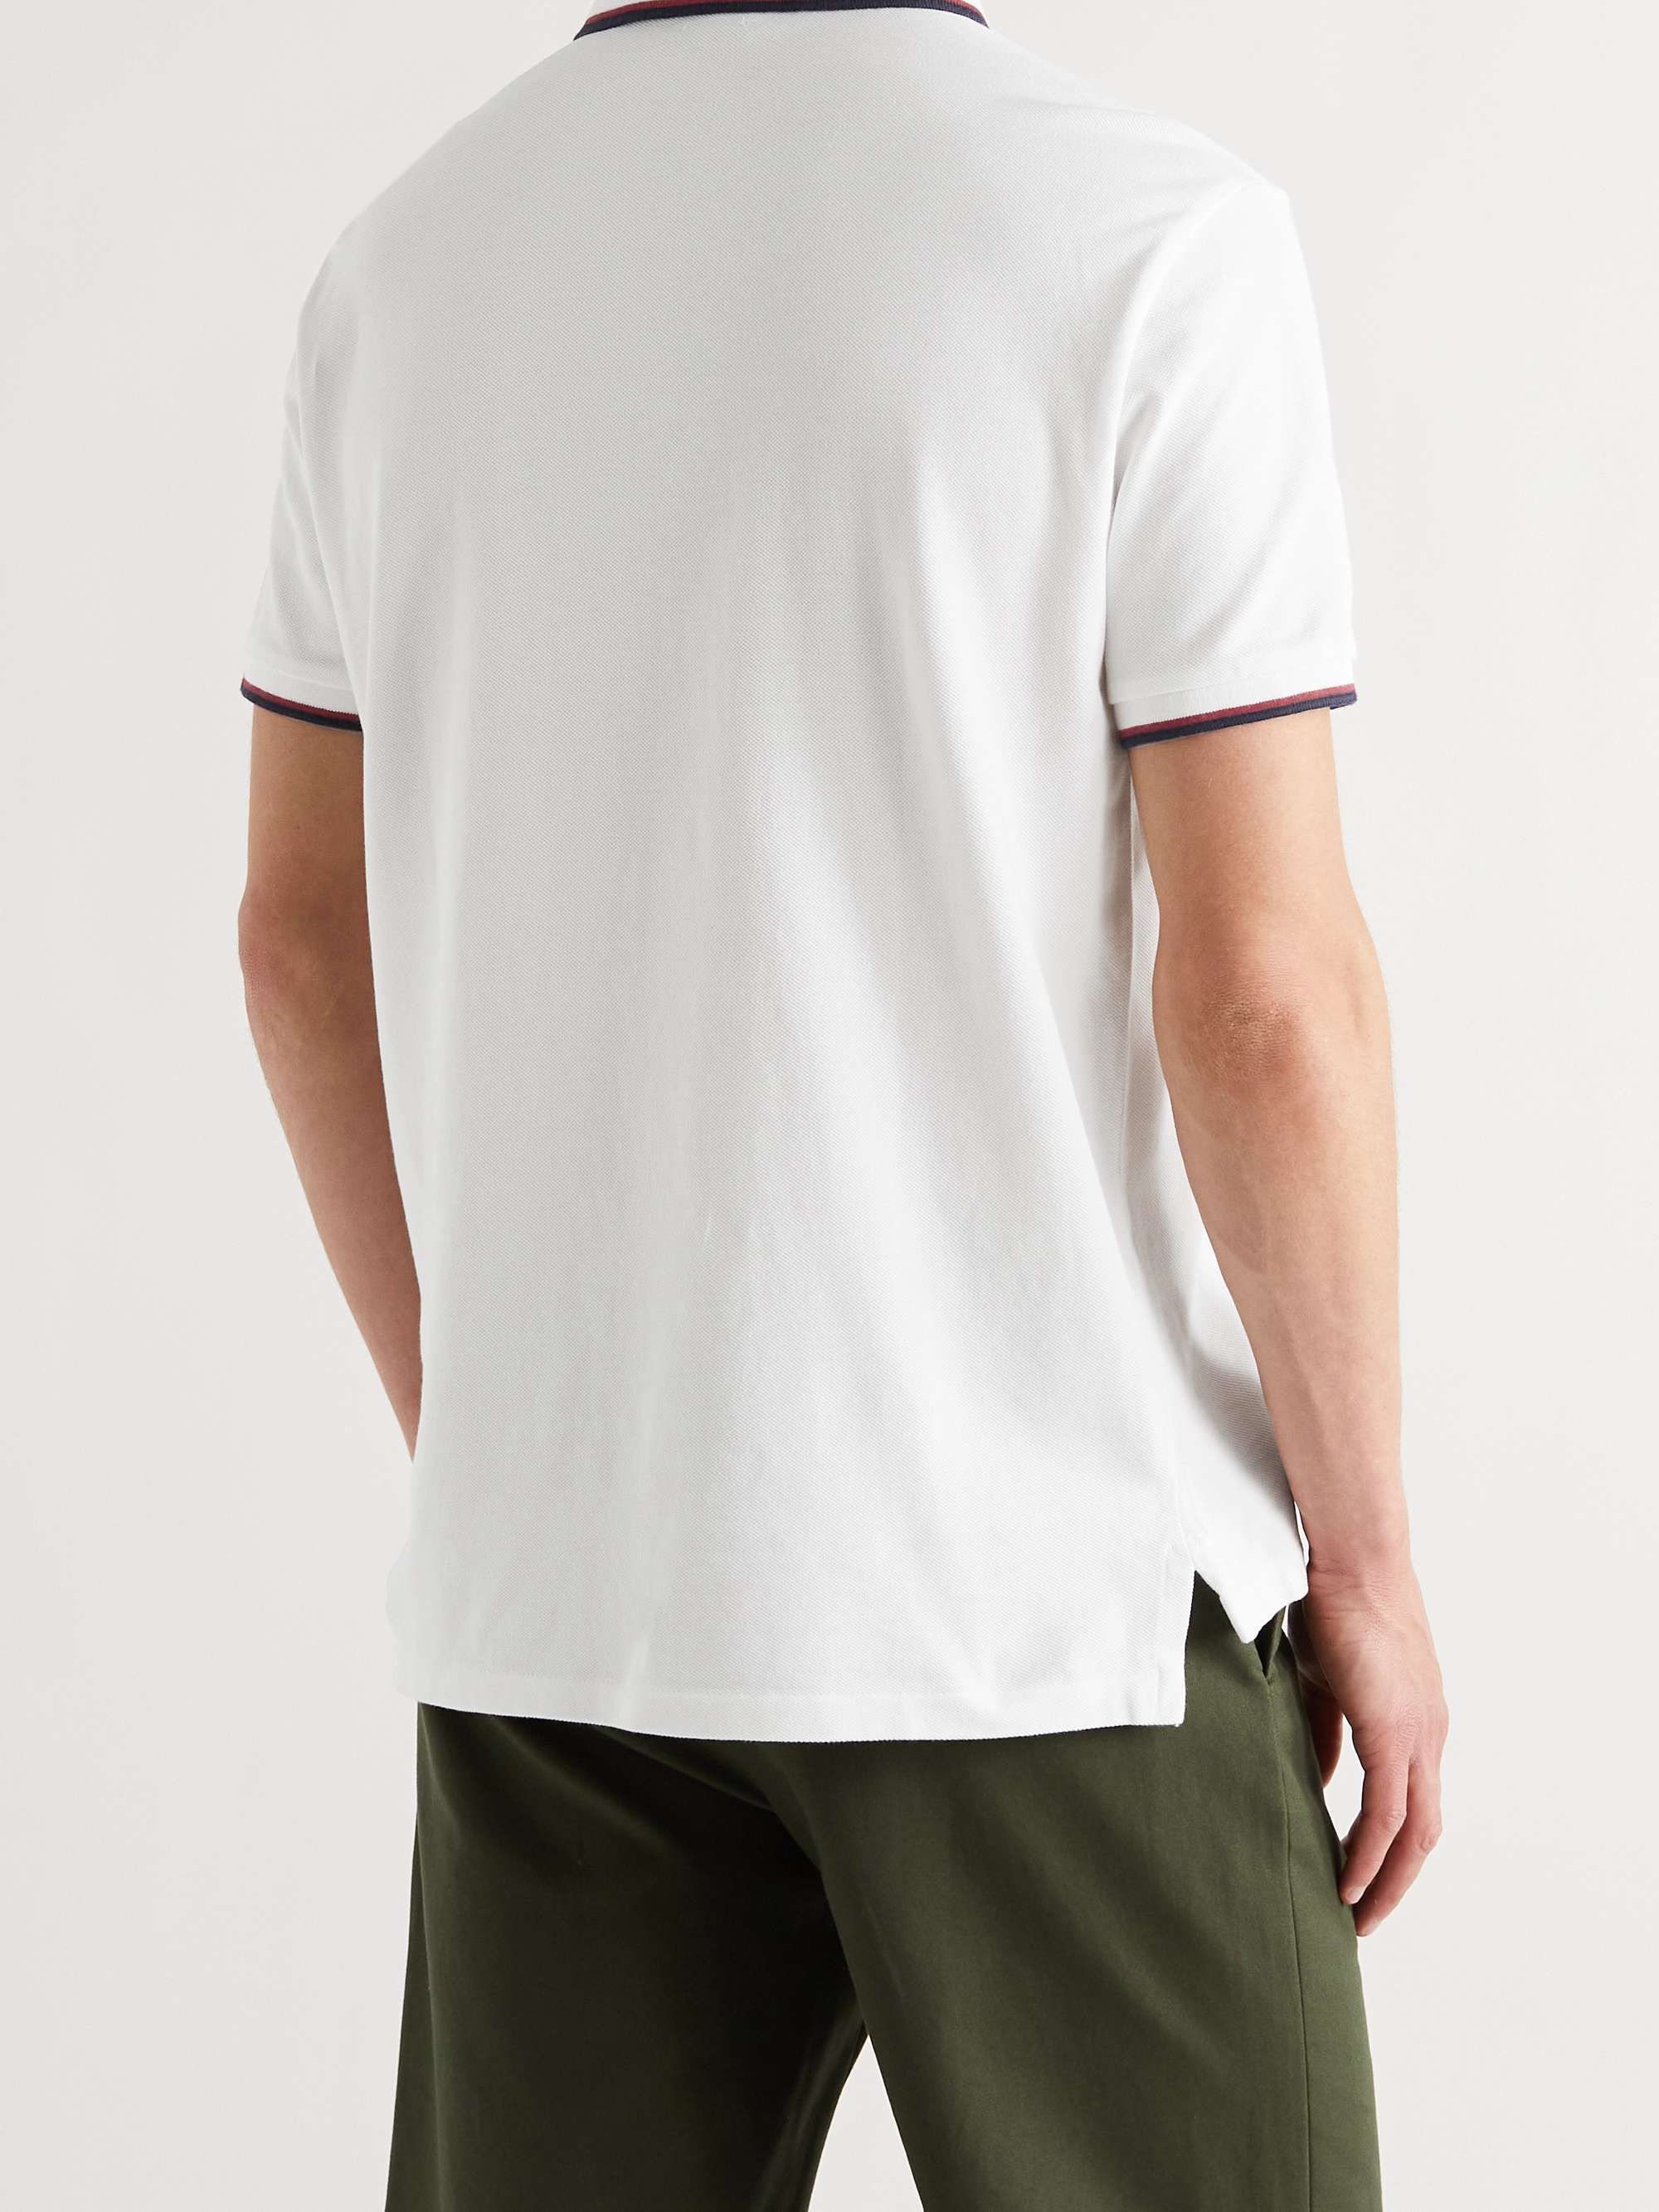 POLO RALPH LAUREN Slim-Fit Contrast-Tipped Cotton-Piqué Polo Shirt